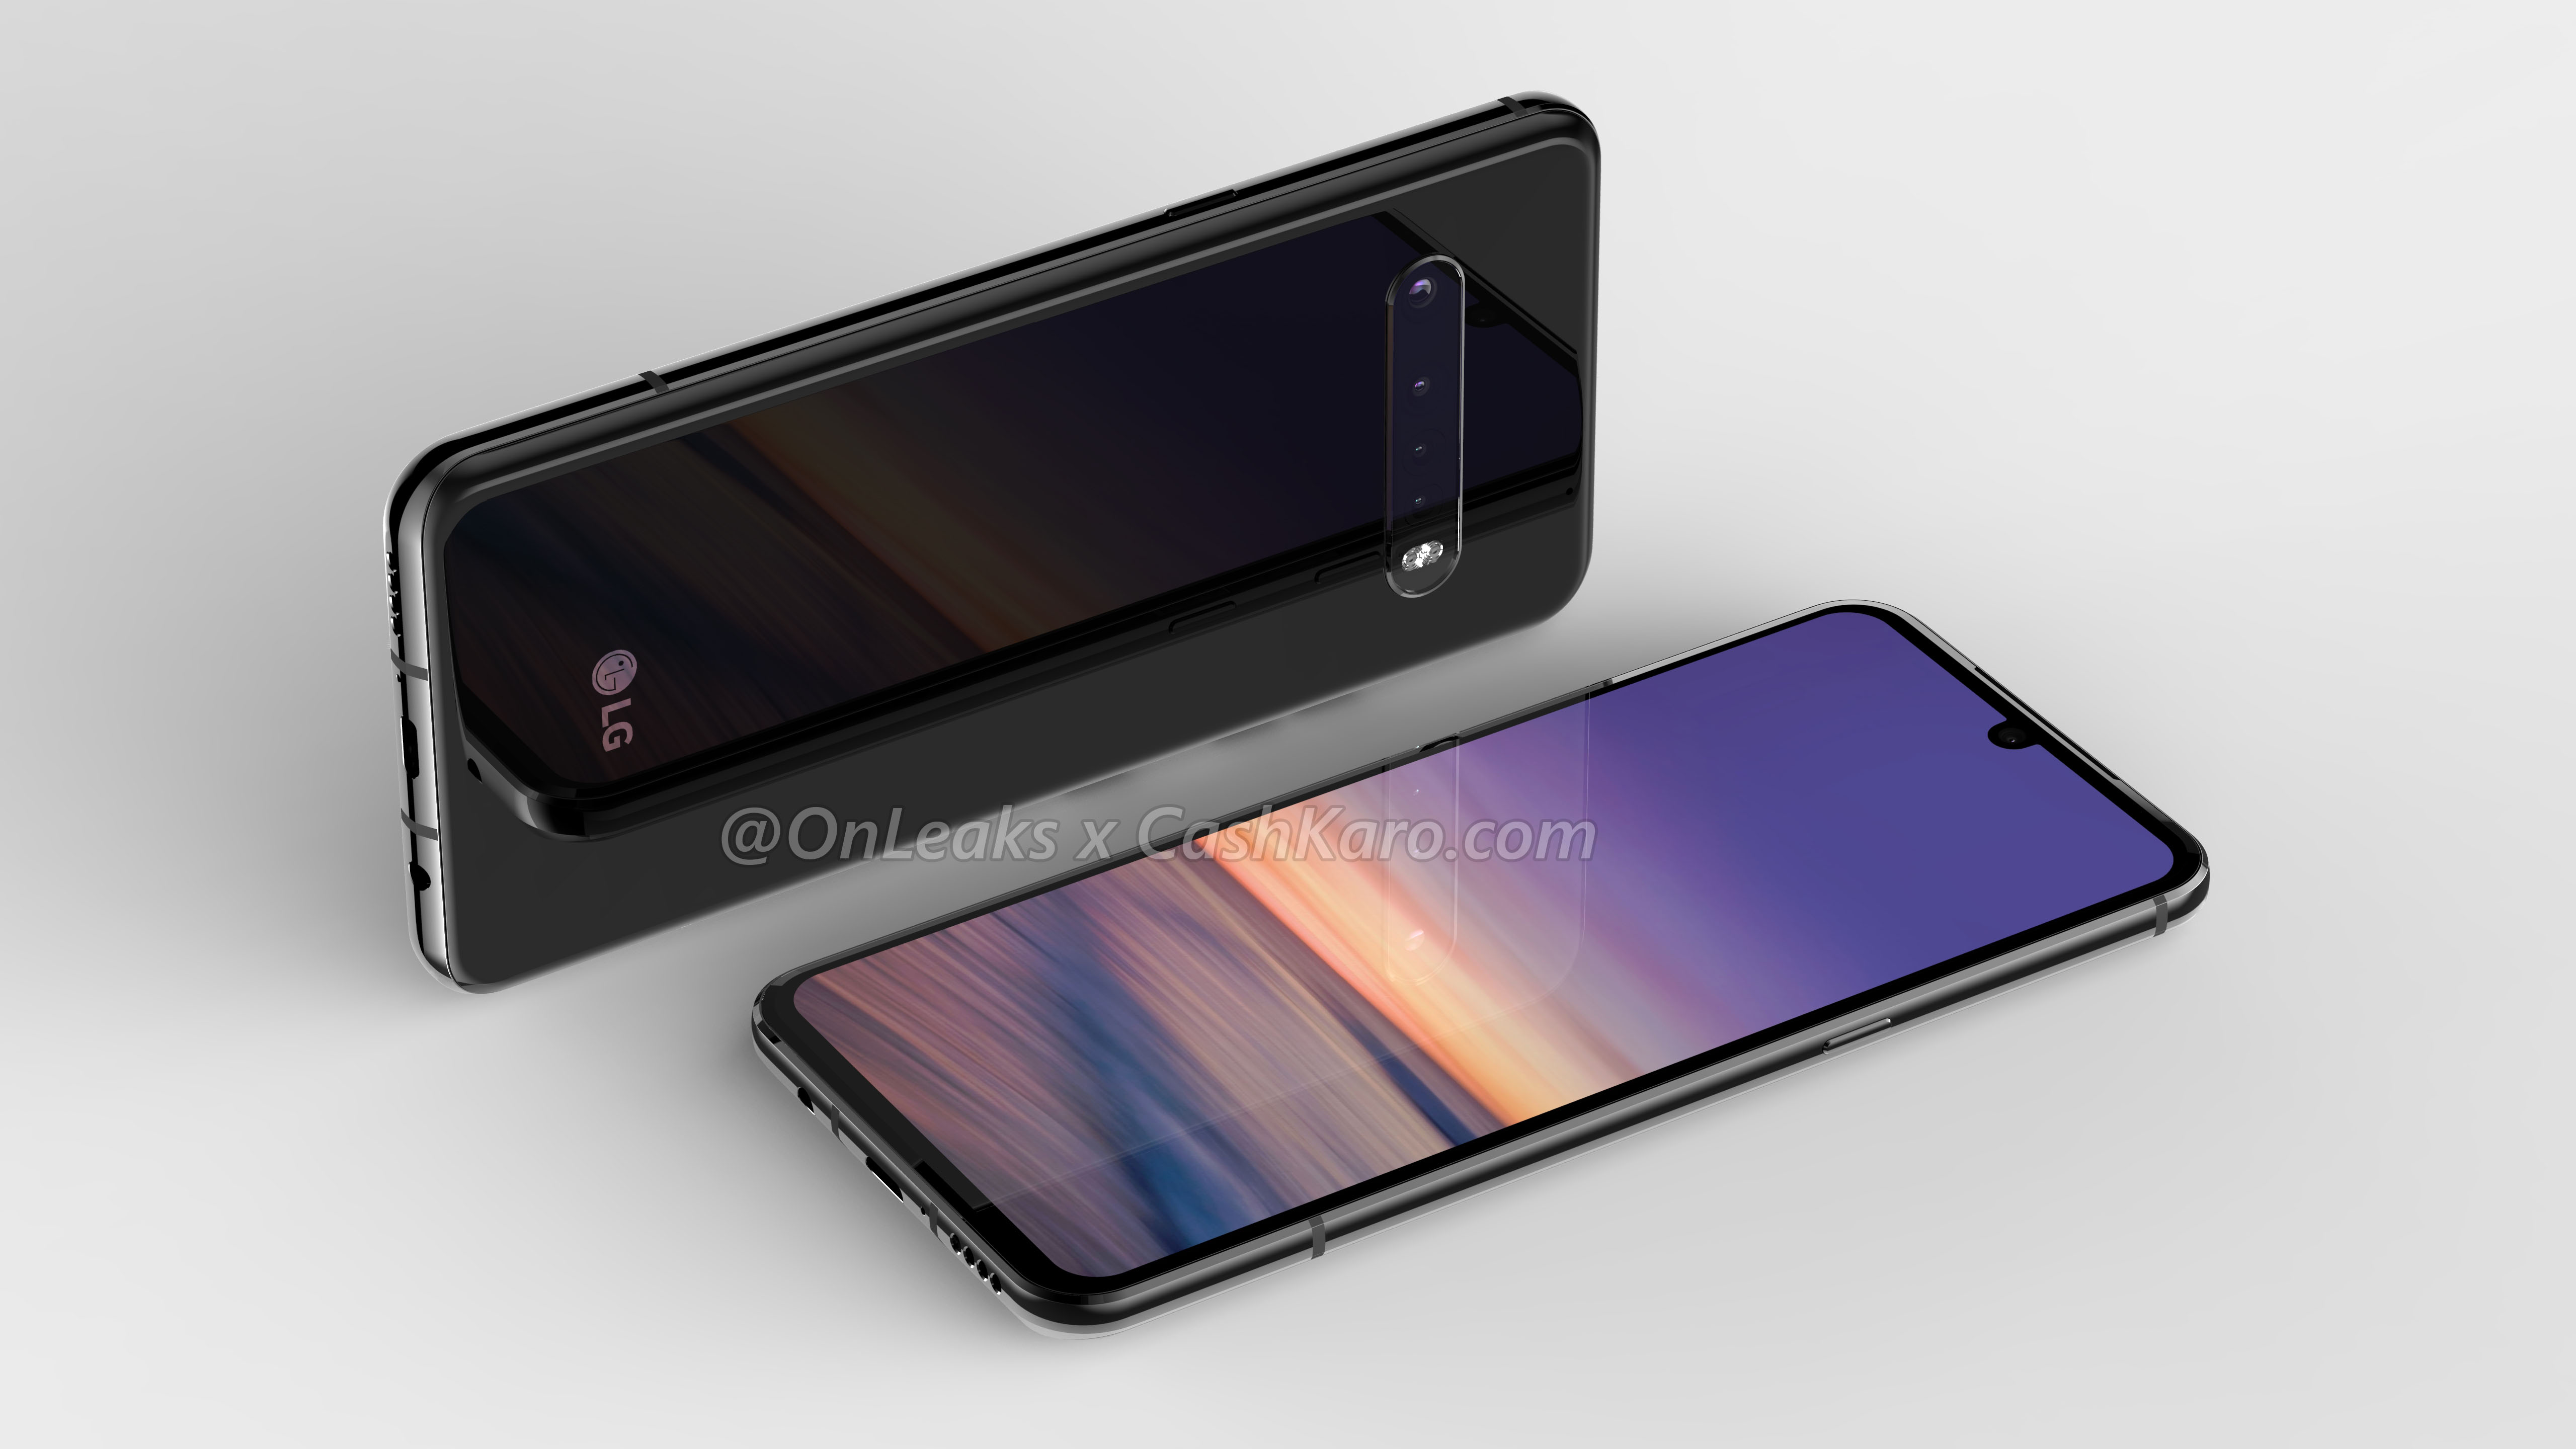 LG G9 lộ ảnh render
với thiết kế màn hình giọt nước, vân tay trong màn hình, 4
camera sau, có jack 3.5mm